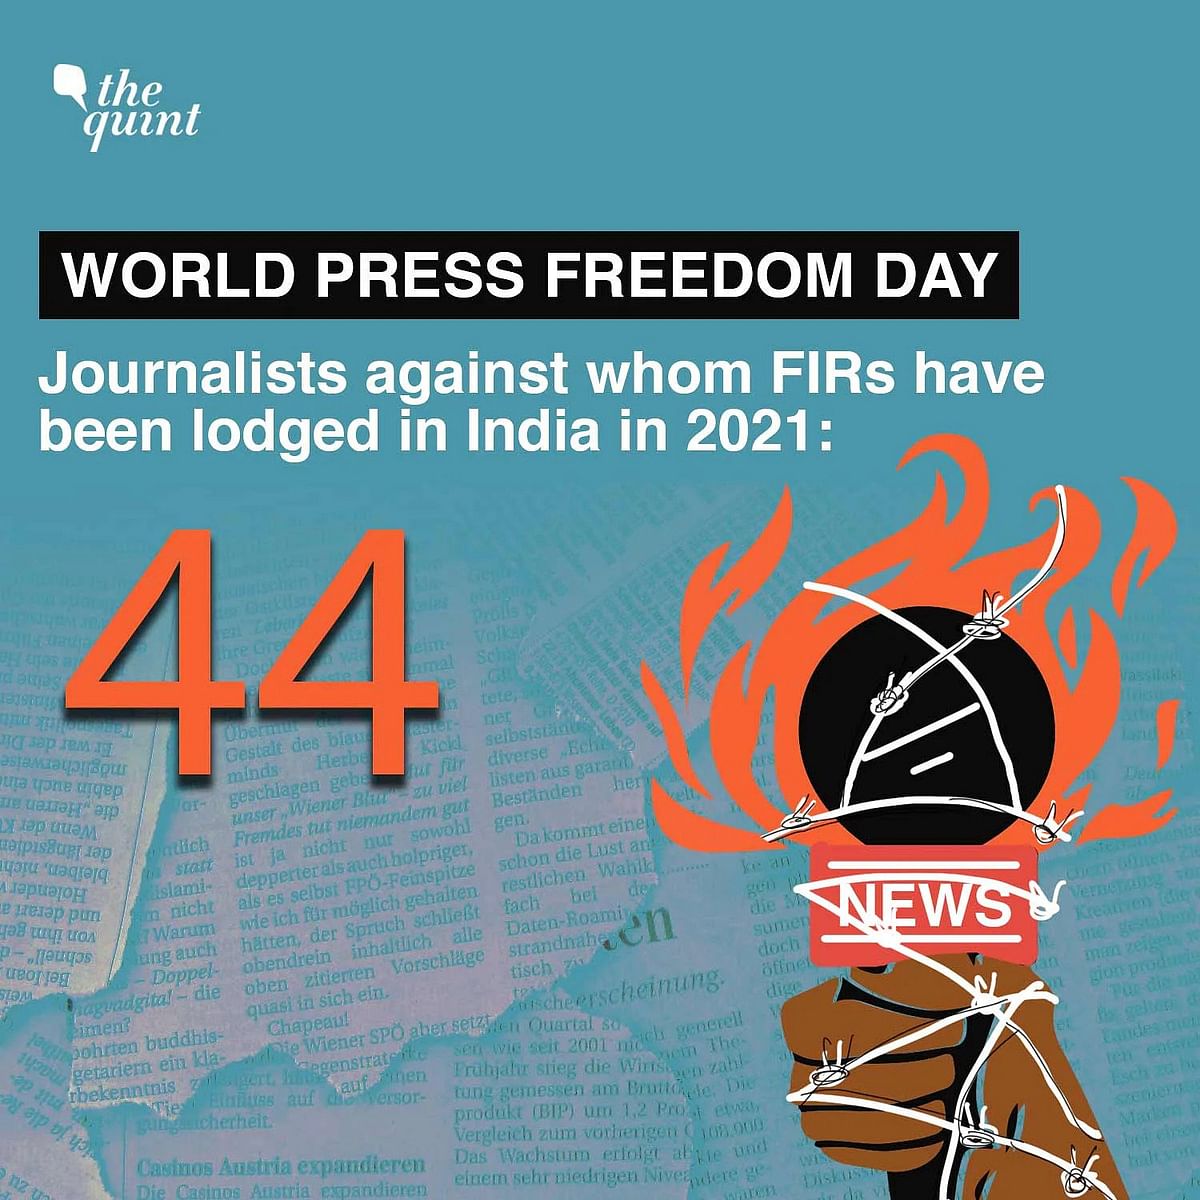 2021 में 44 पत्रकारों के खिलाफ FIR की गई थी, जिनमें से कुछ के खिलाफ विभिन्न राज्यों में एक से ज्यादा दर्ज की गई थी.